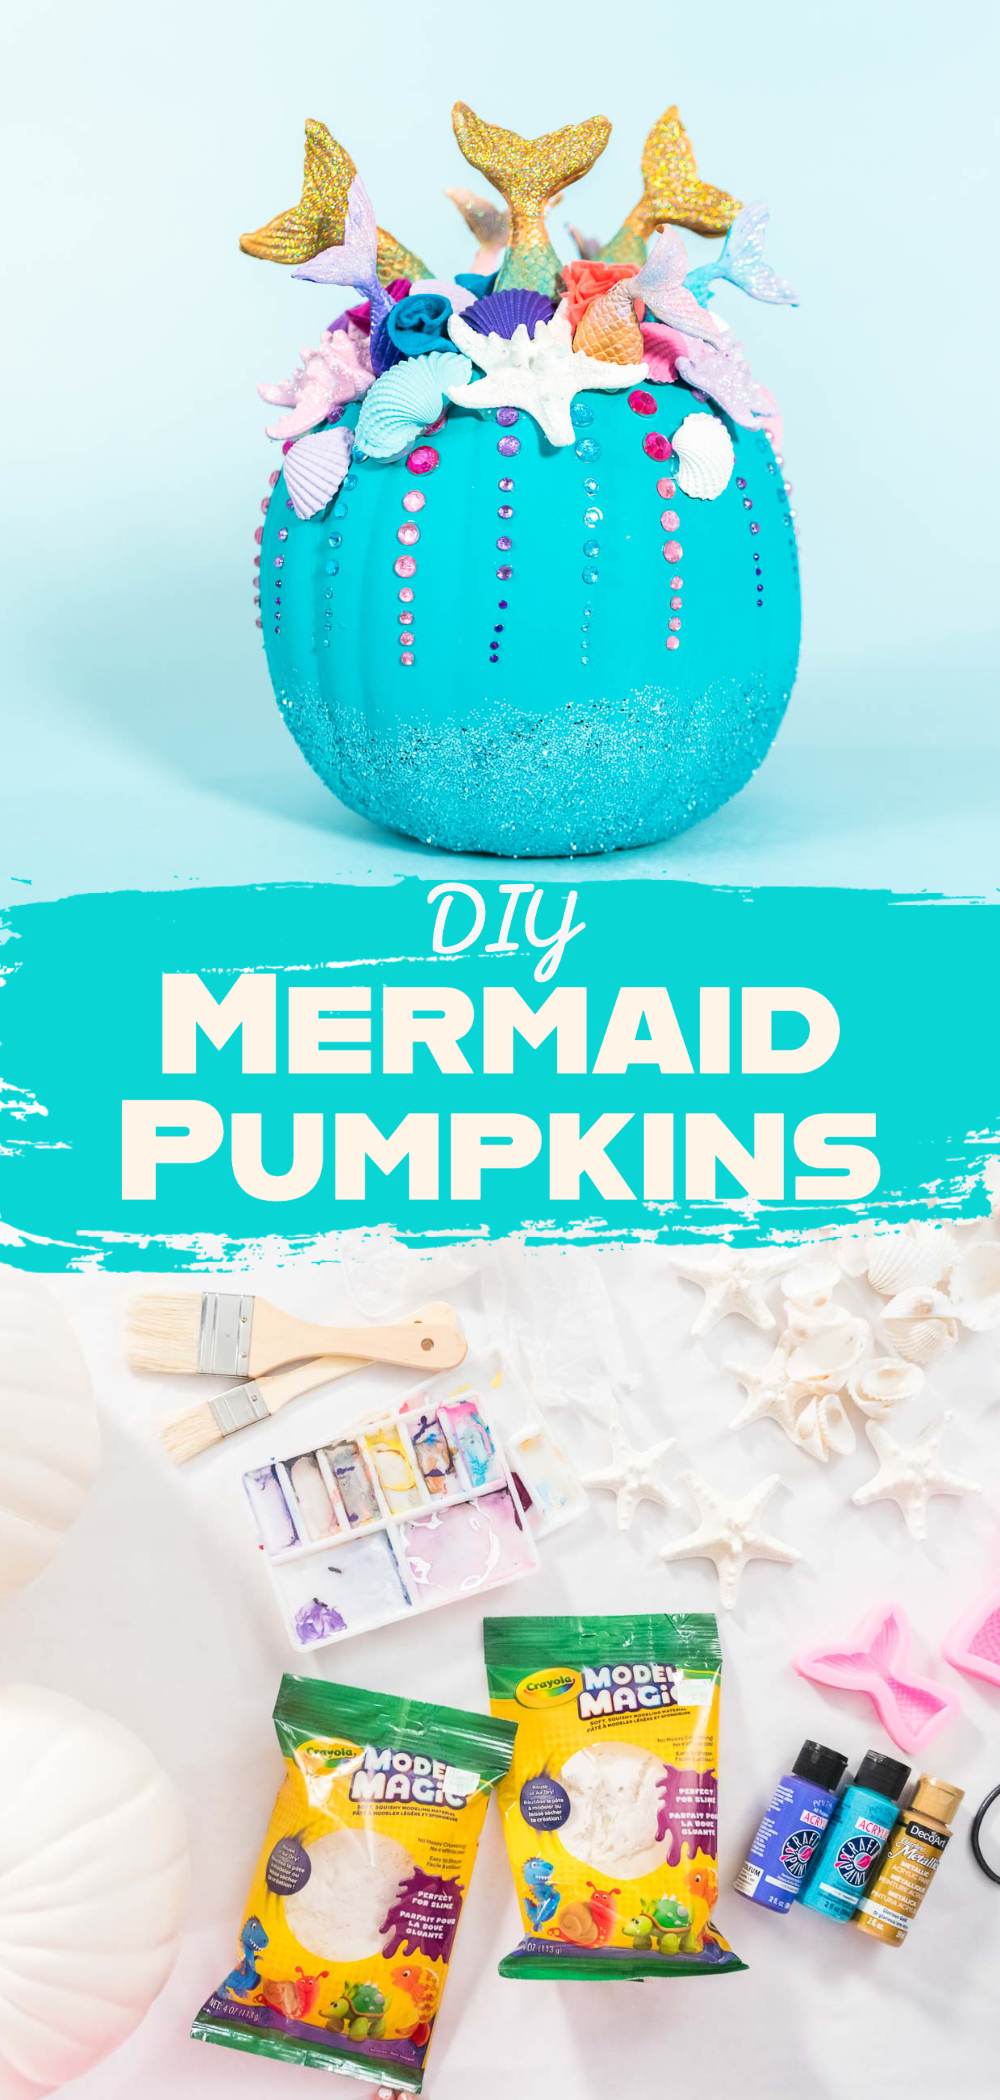 DIY Mermaid Pumpkins